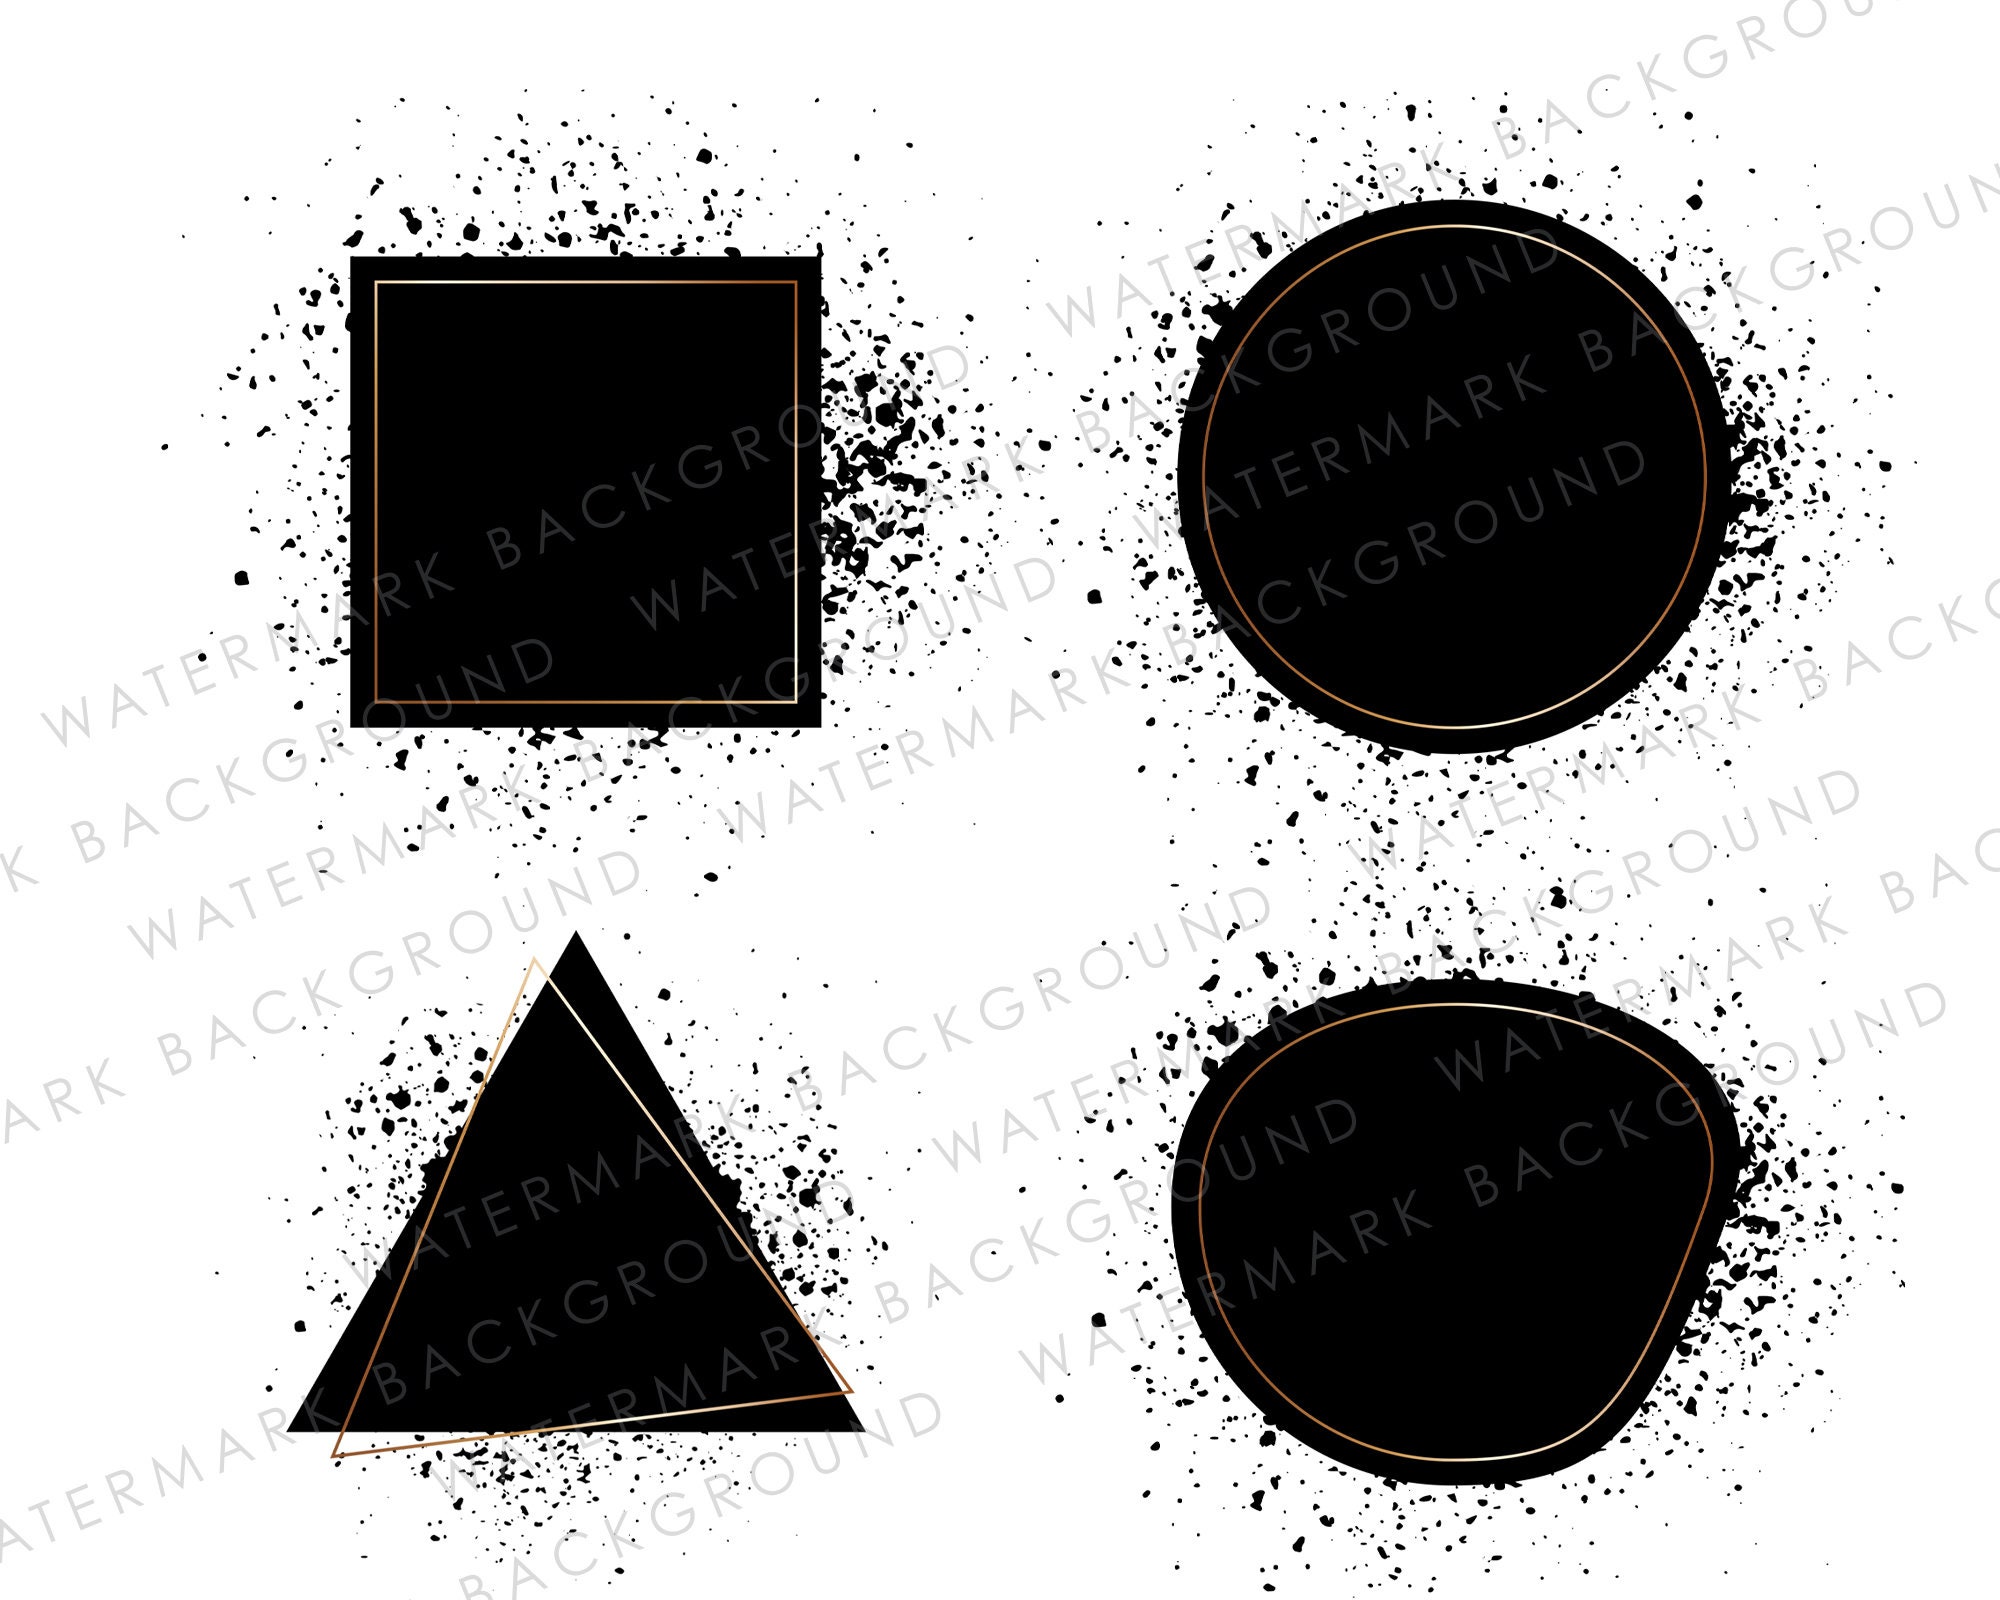 Black Background Png, Distressed Black Frame Png, Black Brush Stroke Png,  Design Elements, Black Paint, Splash, Circle, Digital Download 